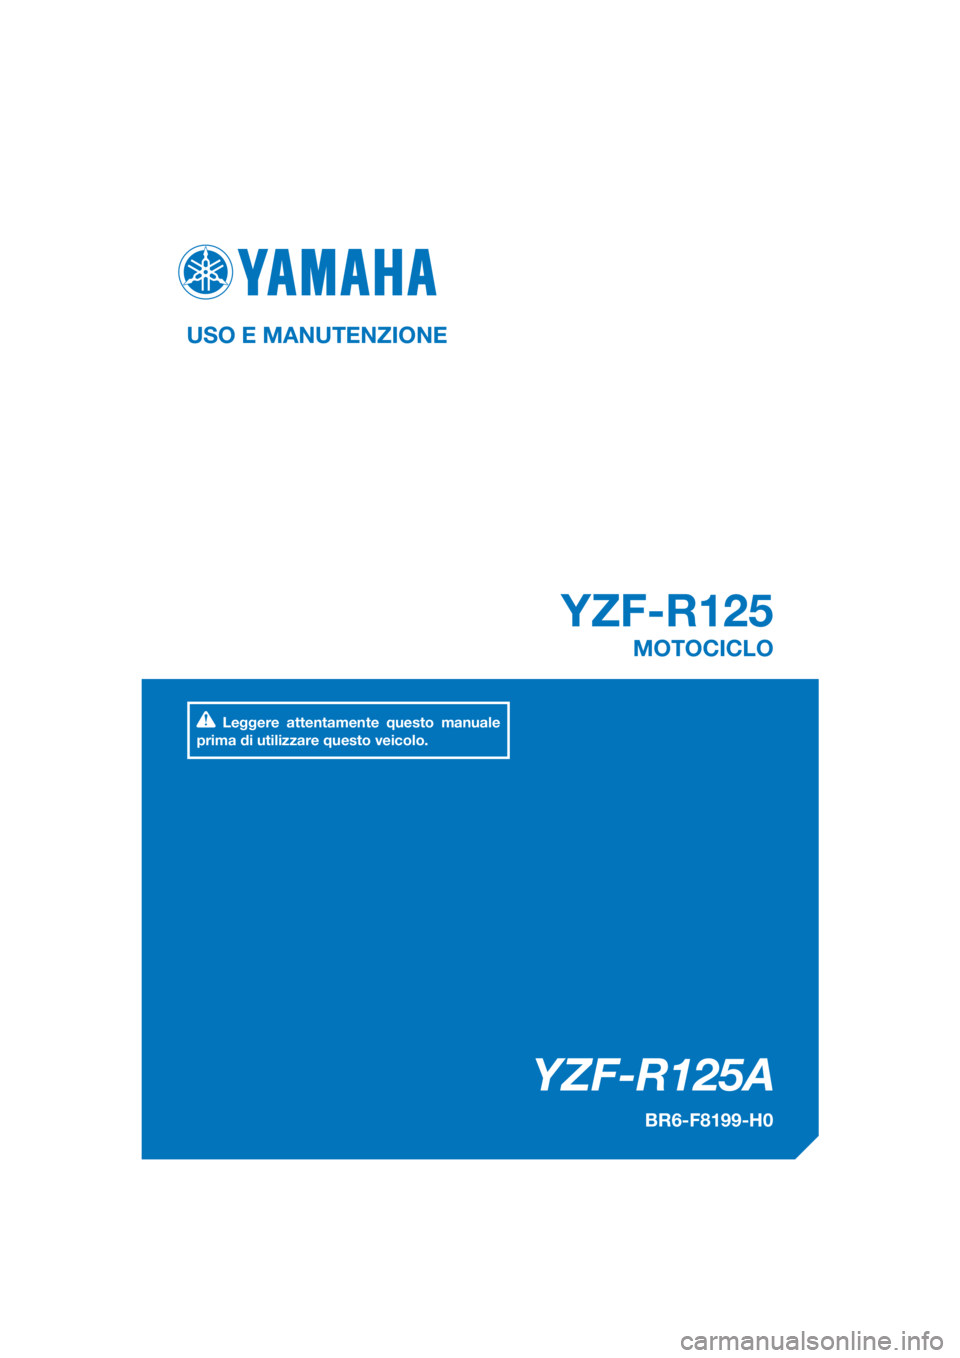 YAMAHA YZF-R125 2017  Manuale duso (in Italian) PANTONE285C
YZF-R125A
YZF-R125
USO E MANUTENZIONE
BR6-F8199-H0
MOTOCICLO
Leggere attentamente questo manuale 
prima di utilizzare questo veicolo.
[Italian  (H)] 